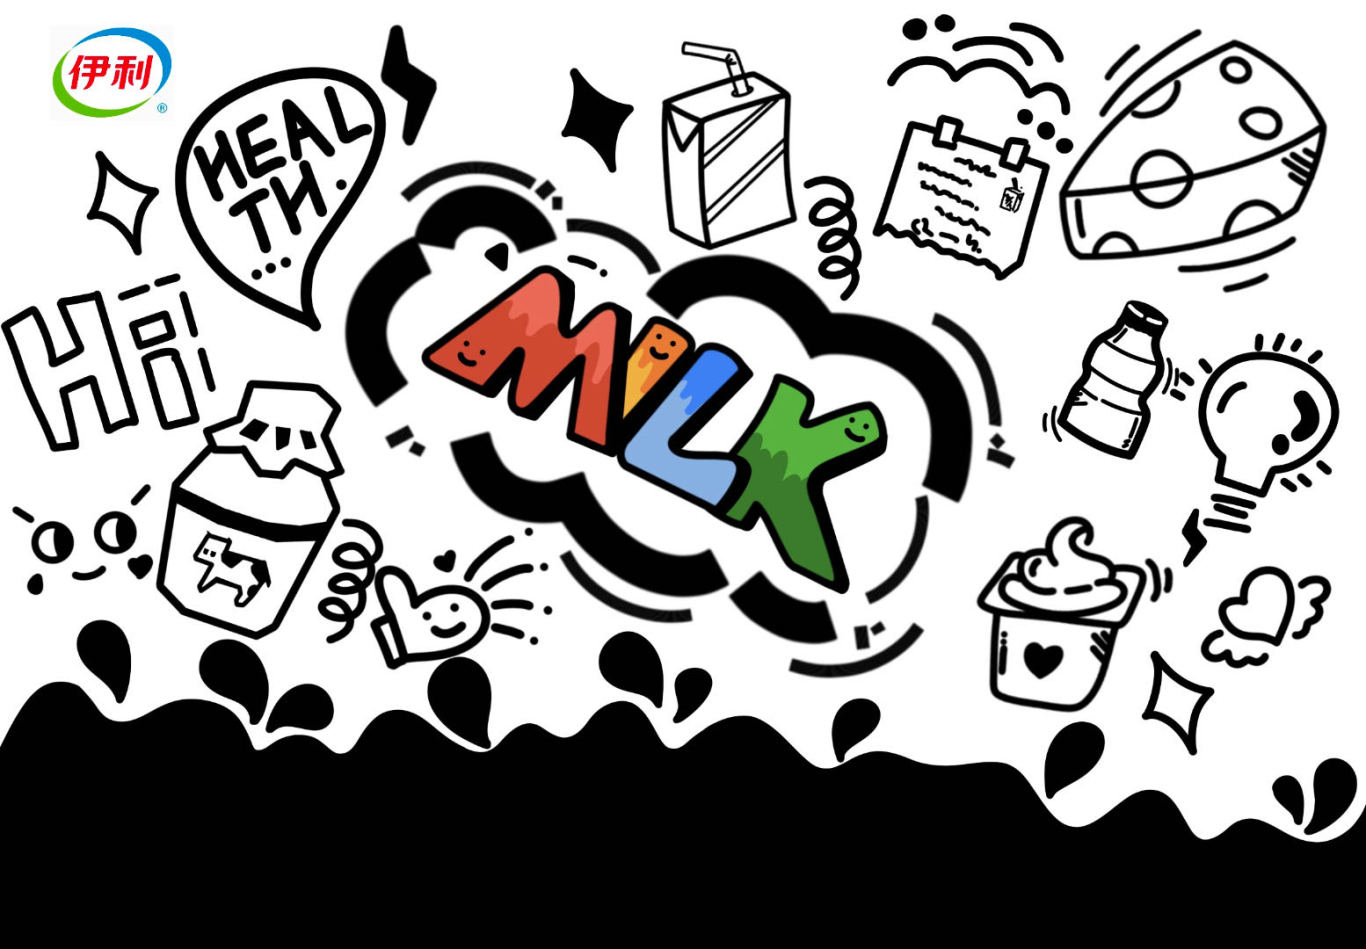 伊利无添加纯牛奶包装设计图1